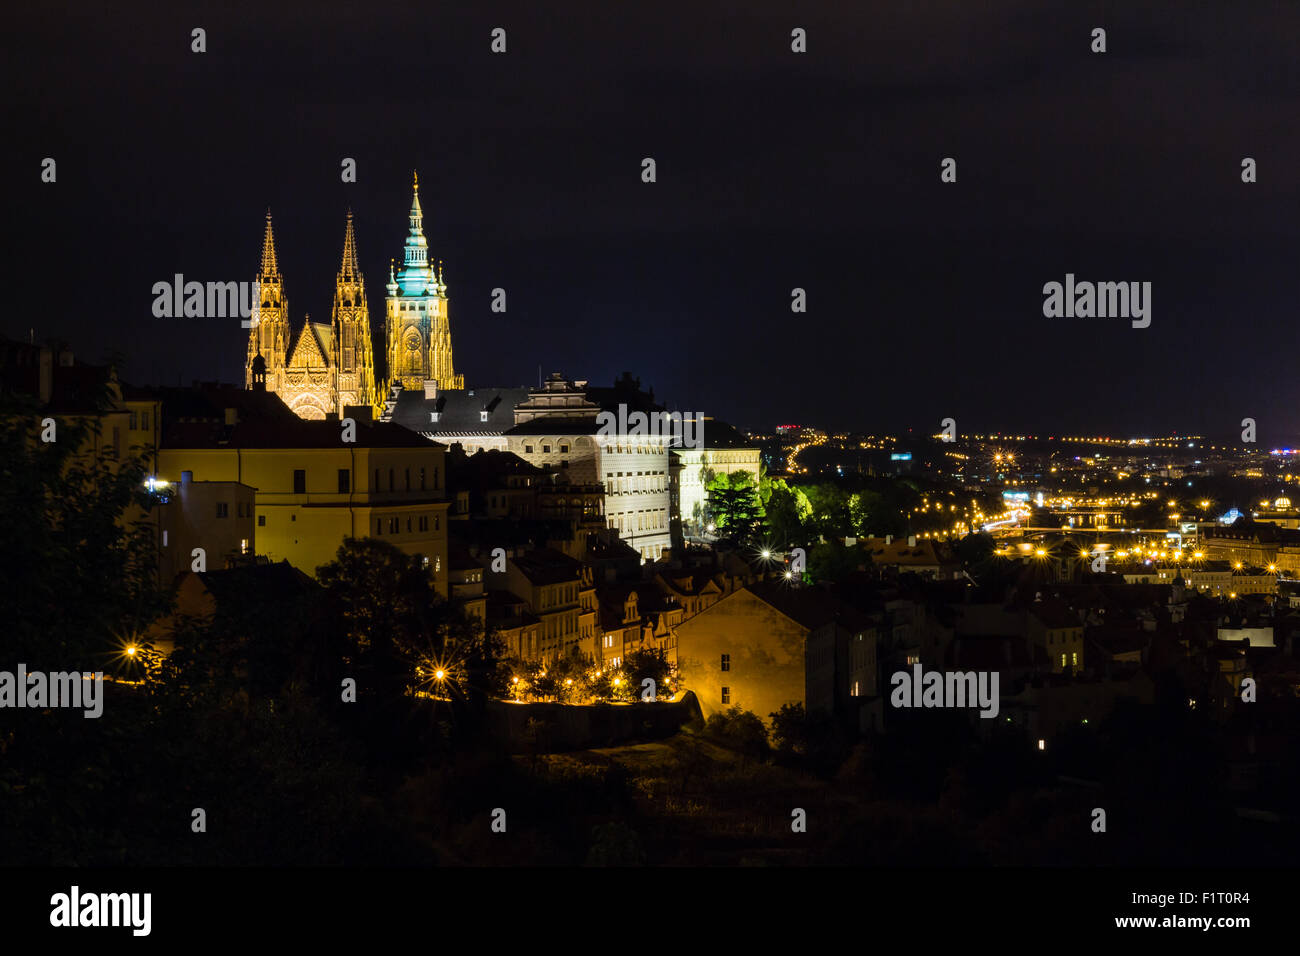 Praga, Repubblica Ceca. Foto notturna del Ponte Carlo, il castello e gli edifici storici Foto Stock